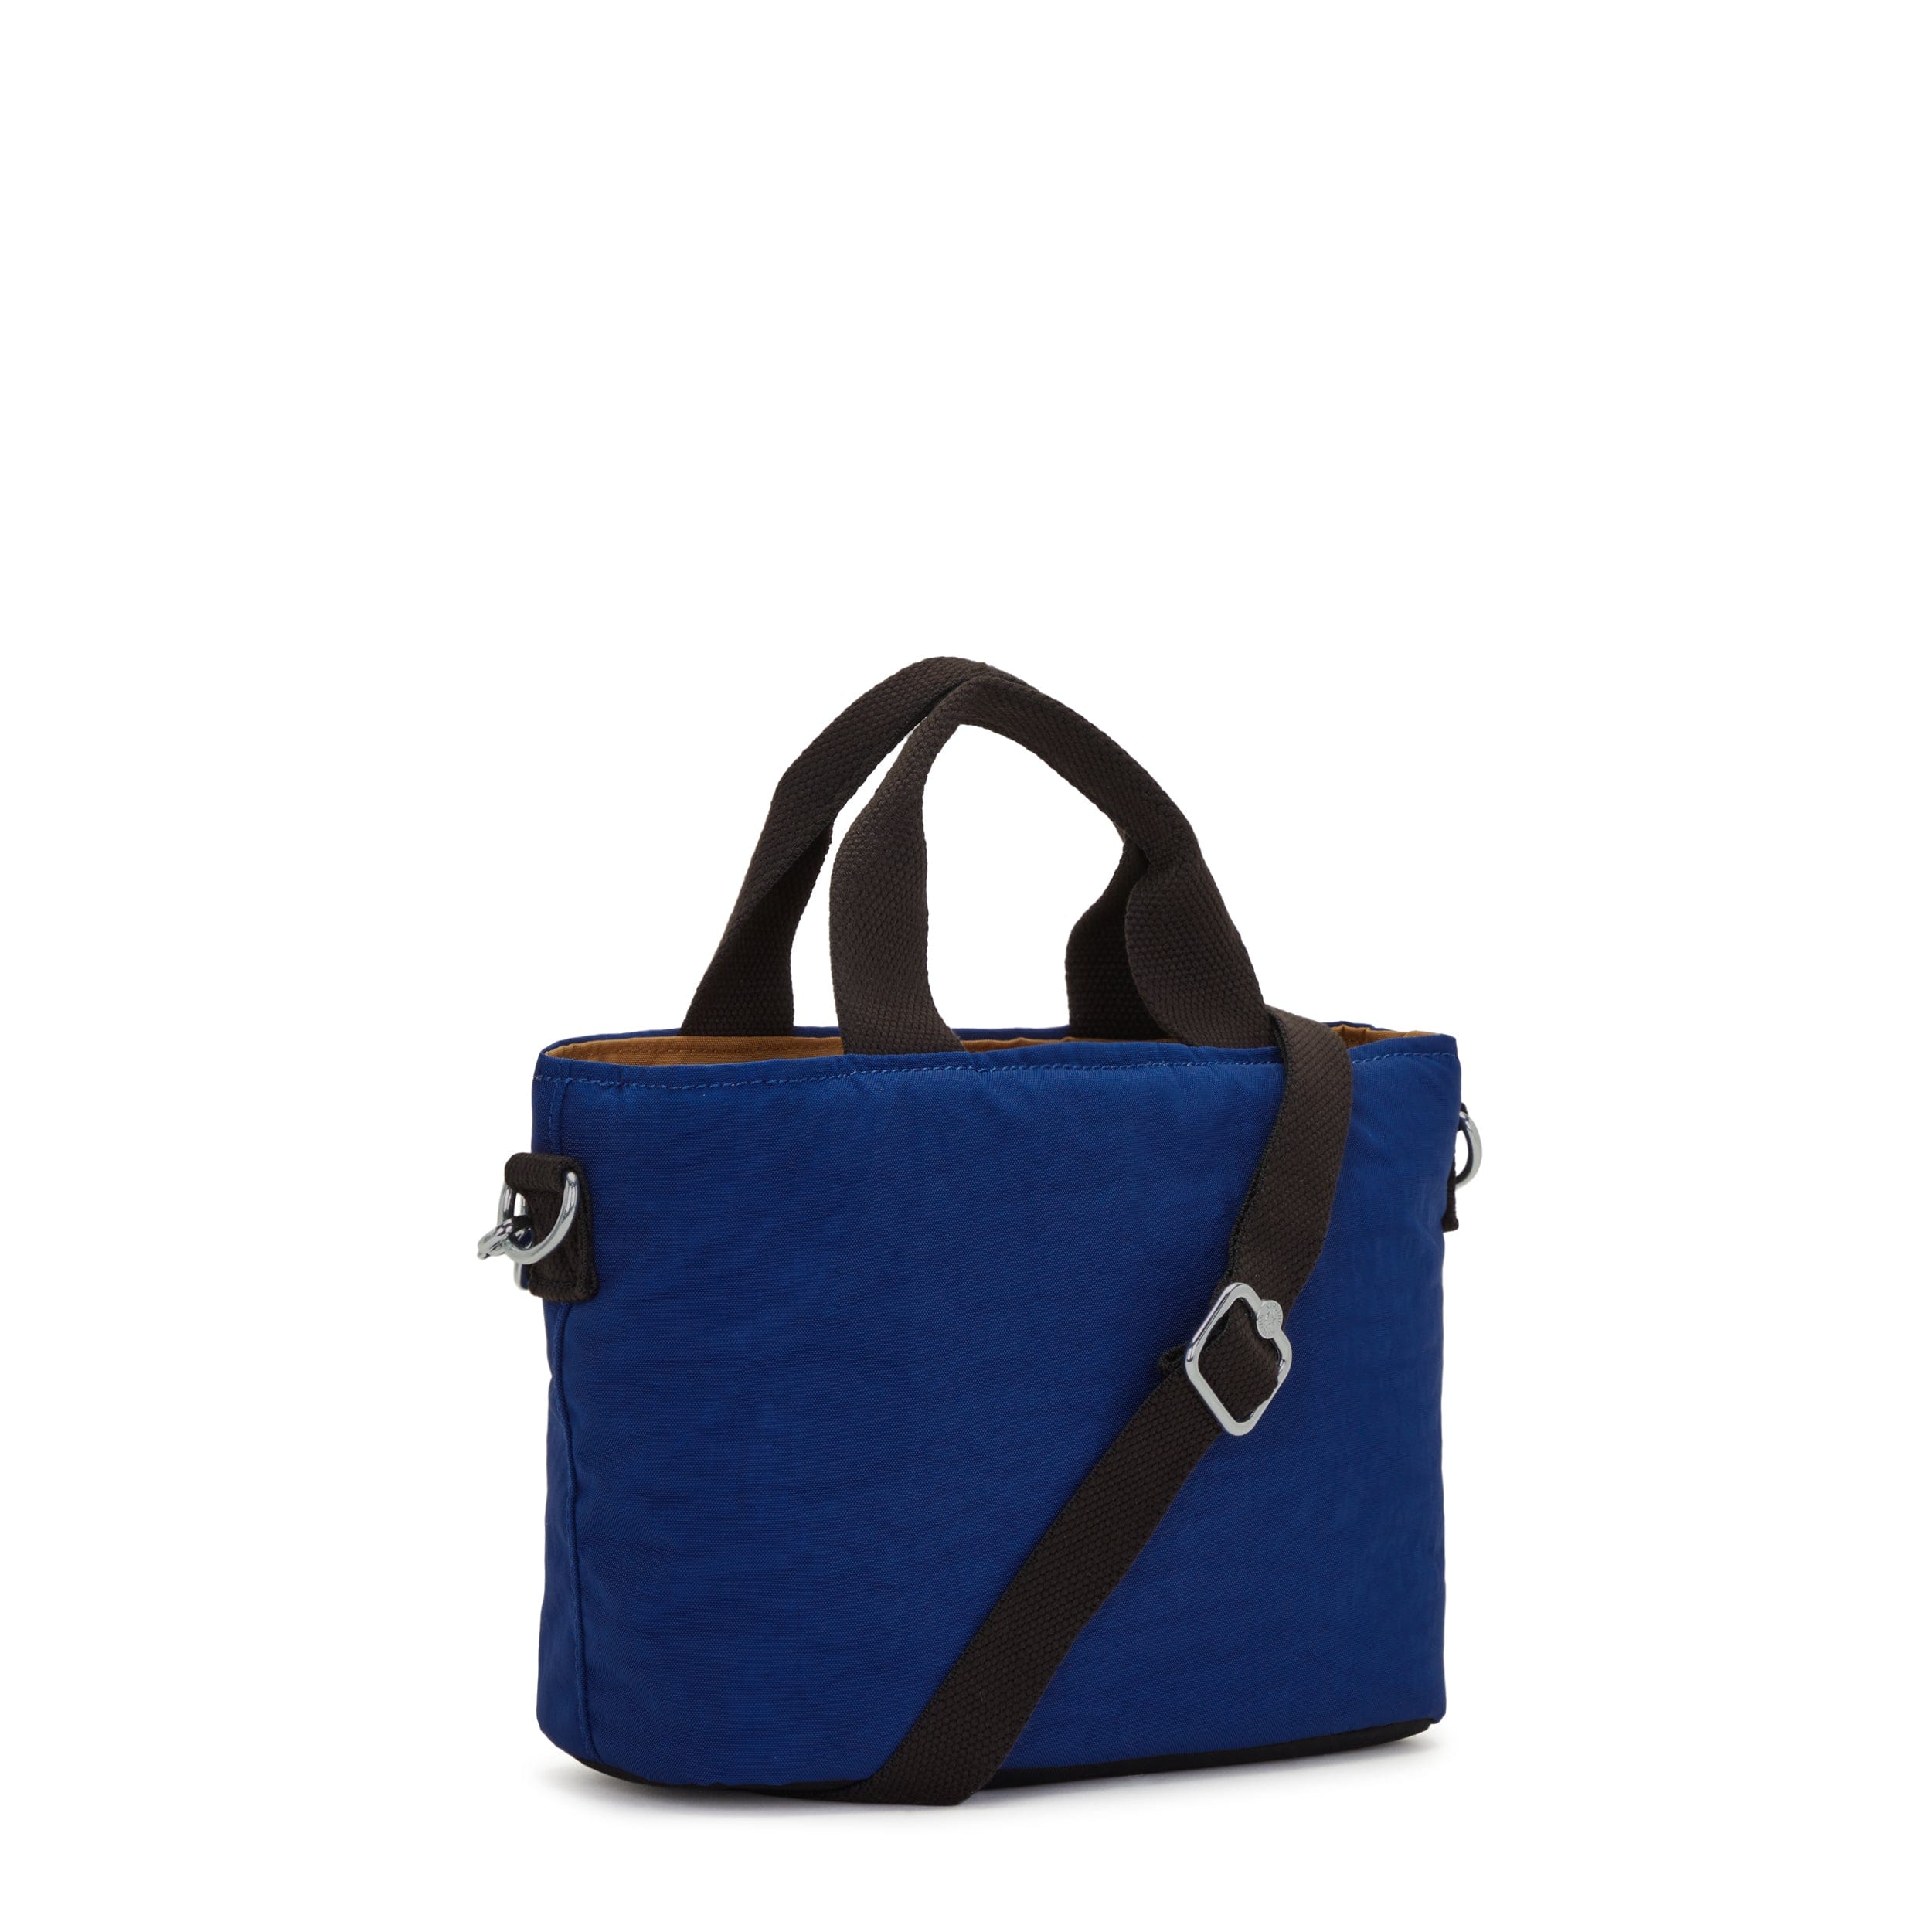 Kipling-Minta-Small Shoulder Bag (With Removable Shoulder Strap)-Duo Blue Beige-I6370-4Ny